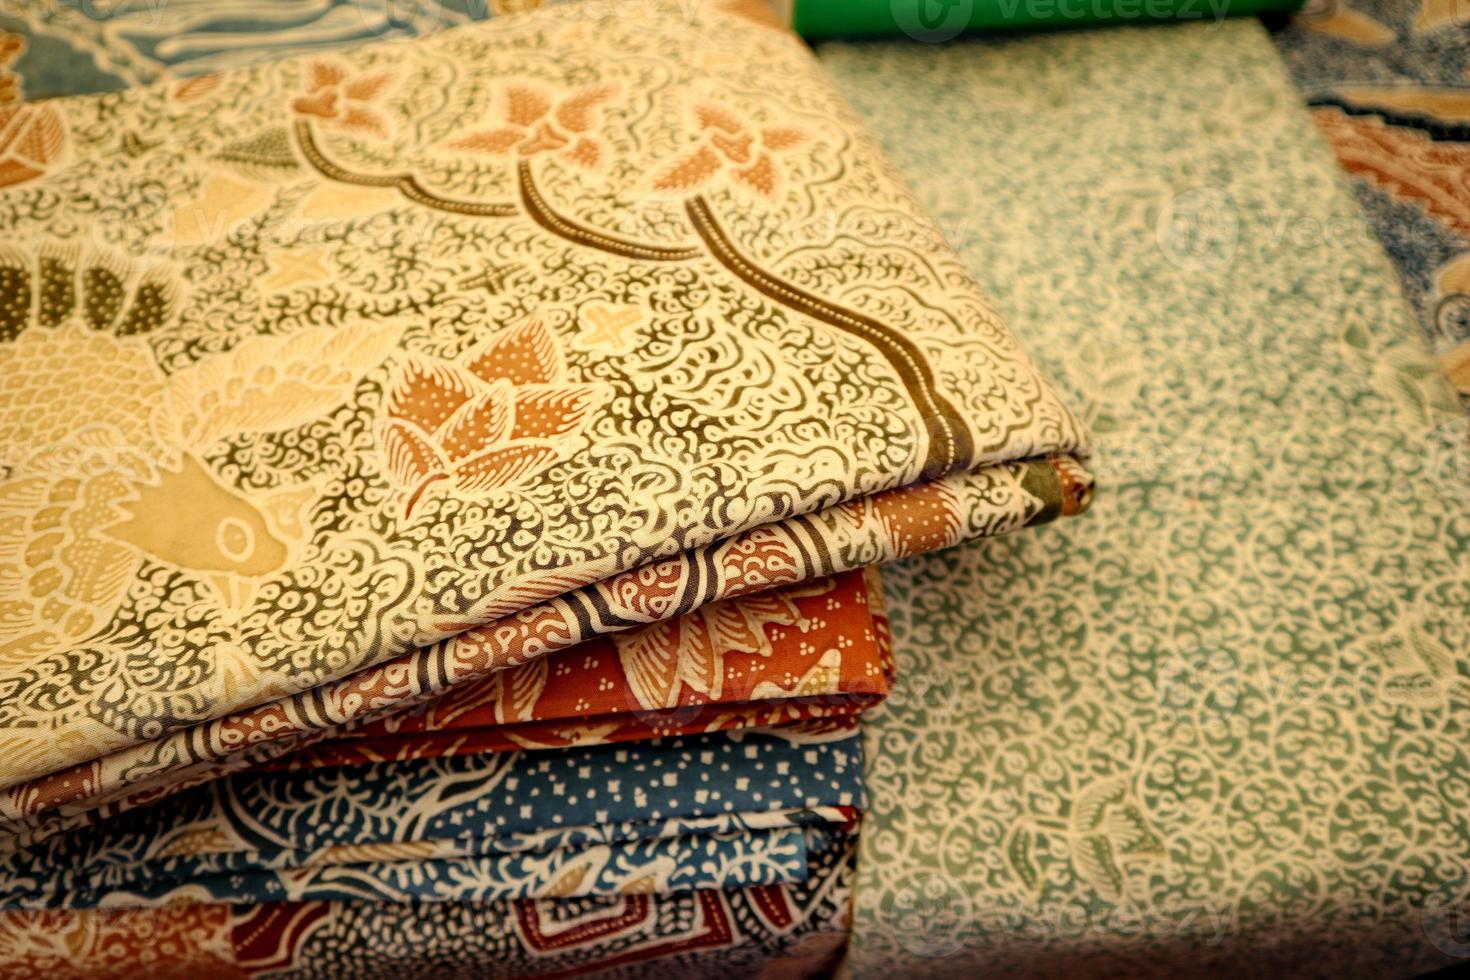 närmare titt på populära tyger i Indonesien som kallas batik, detta är gjort av naturliga färger foto